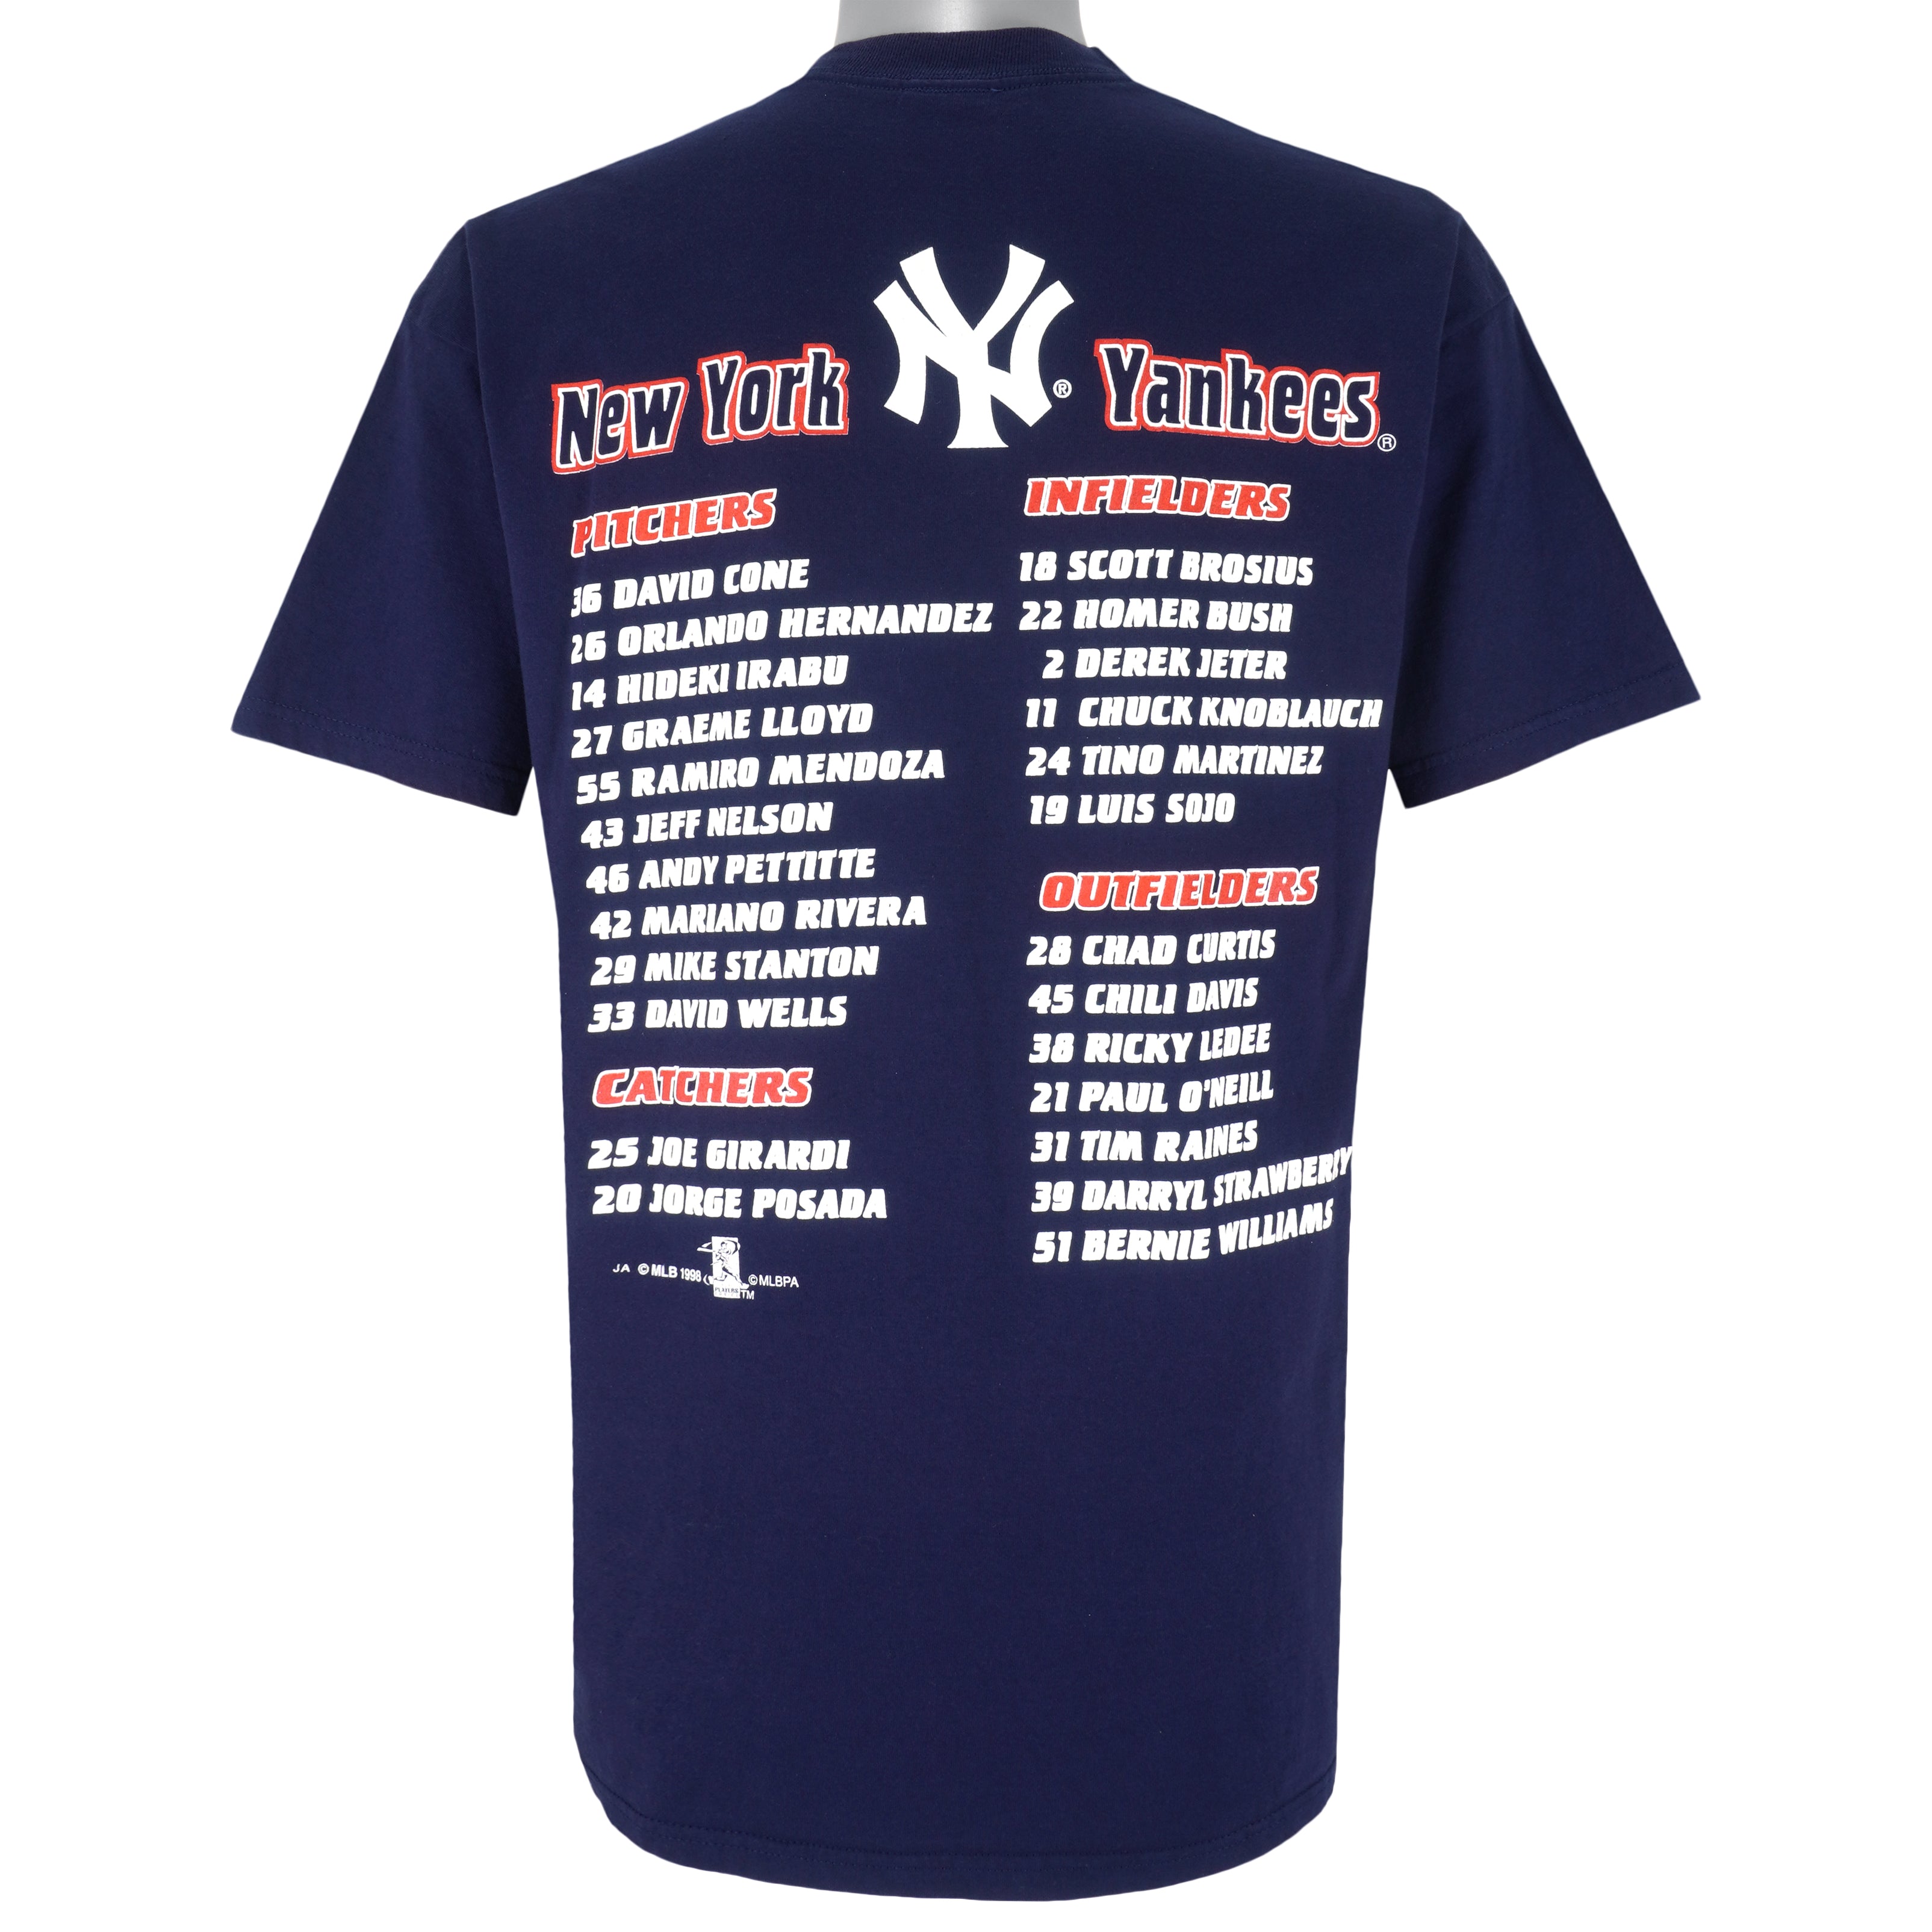 Jeter Williams Knoblauch Martinez Shirt, New York Yankees Shirt